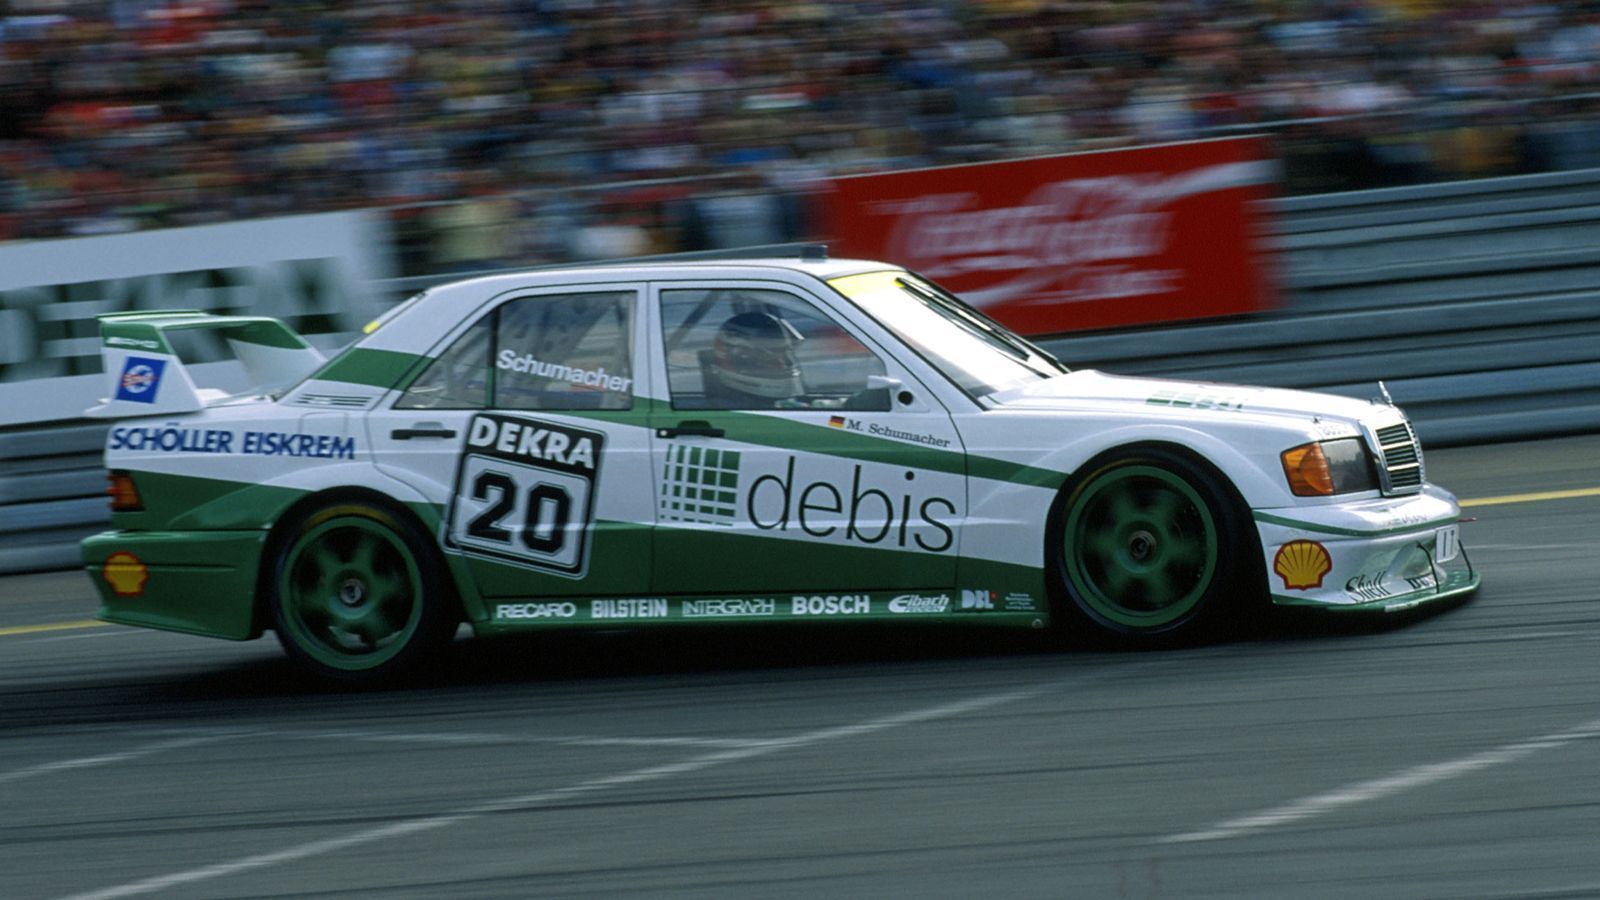 <strong>Prominente Gaststarter</strong><br>
                Auch die Liste der DTM-Gaststarter kann sich sehen lassen: Ein gewisser Michael Schumacher gab 1990 und 1991 mehrere Gastspiele in der DTM <a href="https://www.ran.de/sports/motorsport/dtm/news/als-michael-schumacher-fuer-einen-riesigen-skandal-sorgte-355302#">und sorgte dabei sogar für einen großen Skandal. </a>Auch der sechsmalige Rallye-Weltmeister Sébastien Ogier saß schon am Steuer eines Mercedes-AMG C63 DTM. 2019 startete MotoGP-Star Andrea Dovizioso auf seiner Heimstrecke in Misano Adriatico in einem Audi RS5 DTM. Unvergessen ist auch der Gaststart von Alessandro Zanardi in einem speziell angepassten BMW M4 DTM 2018 an selber Stelle.
